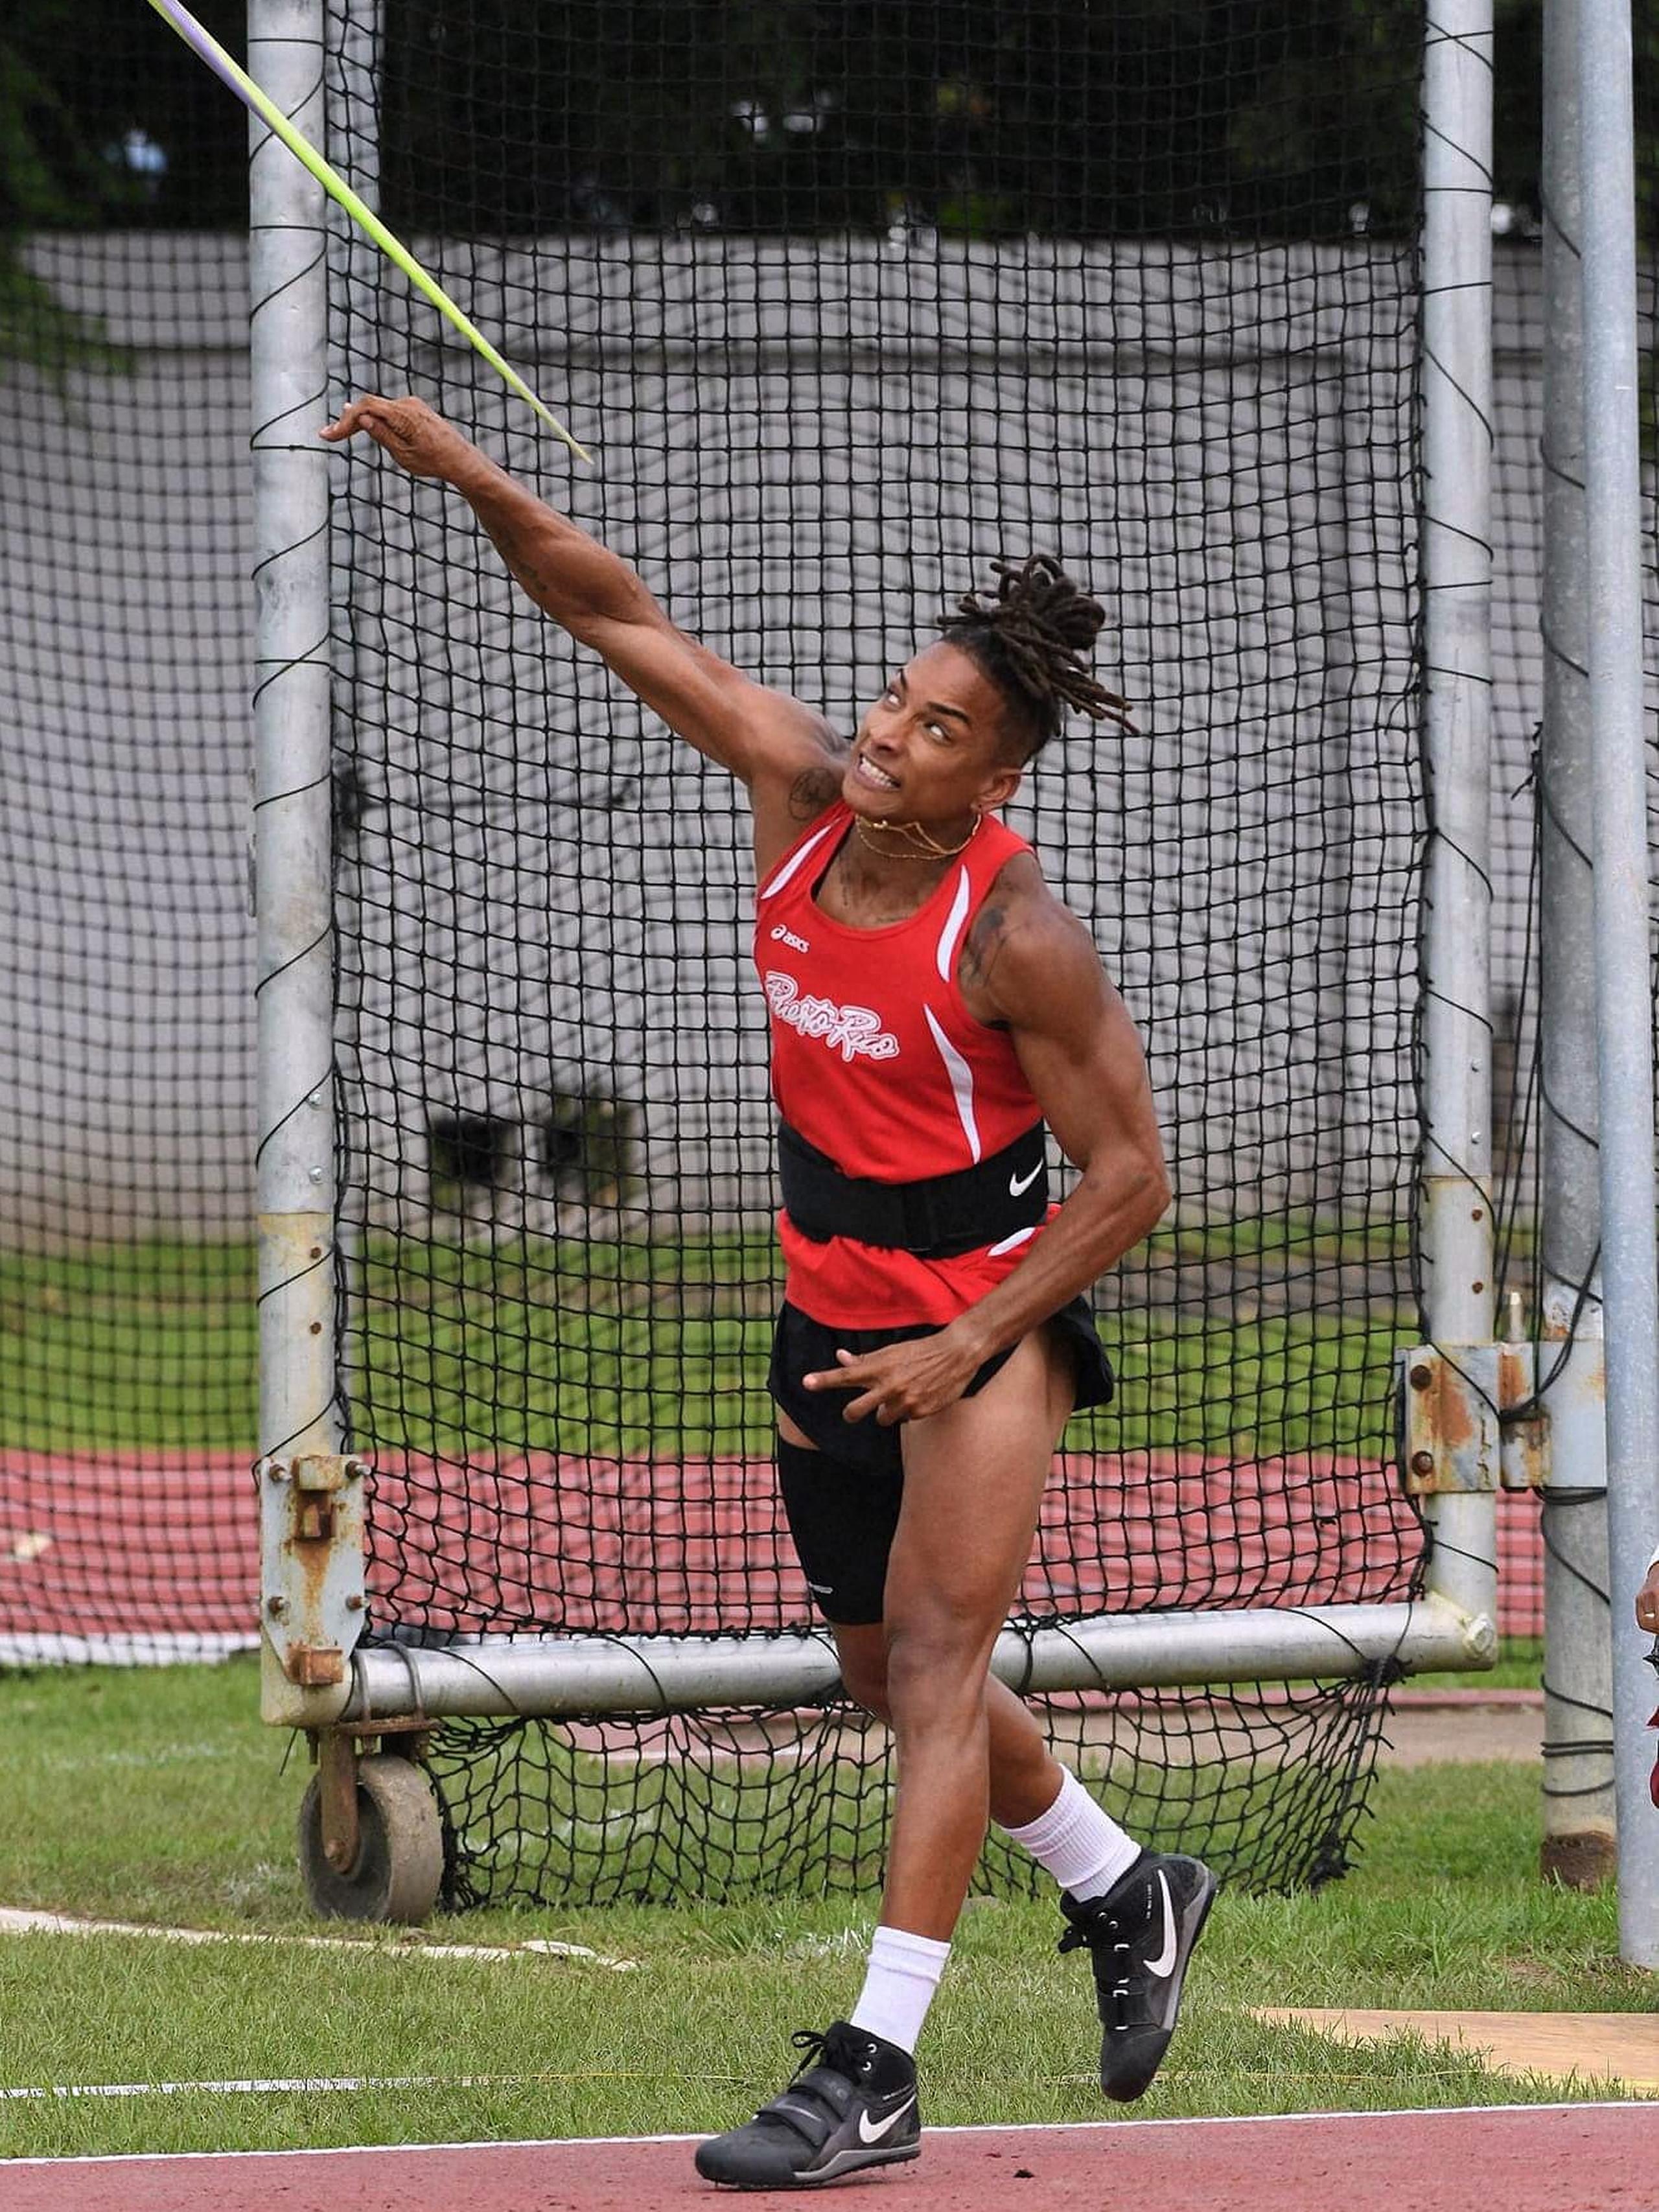 La lanzadora Coralys Ortiz tiene la marca nacional en la jabalina y aspira a reestablecerla en el Campeonato Mundial de atletismo este mes.